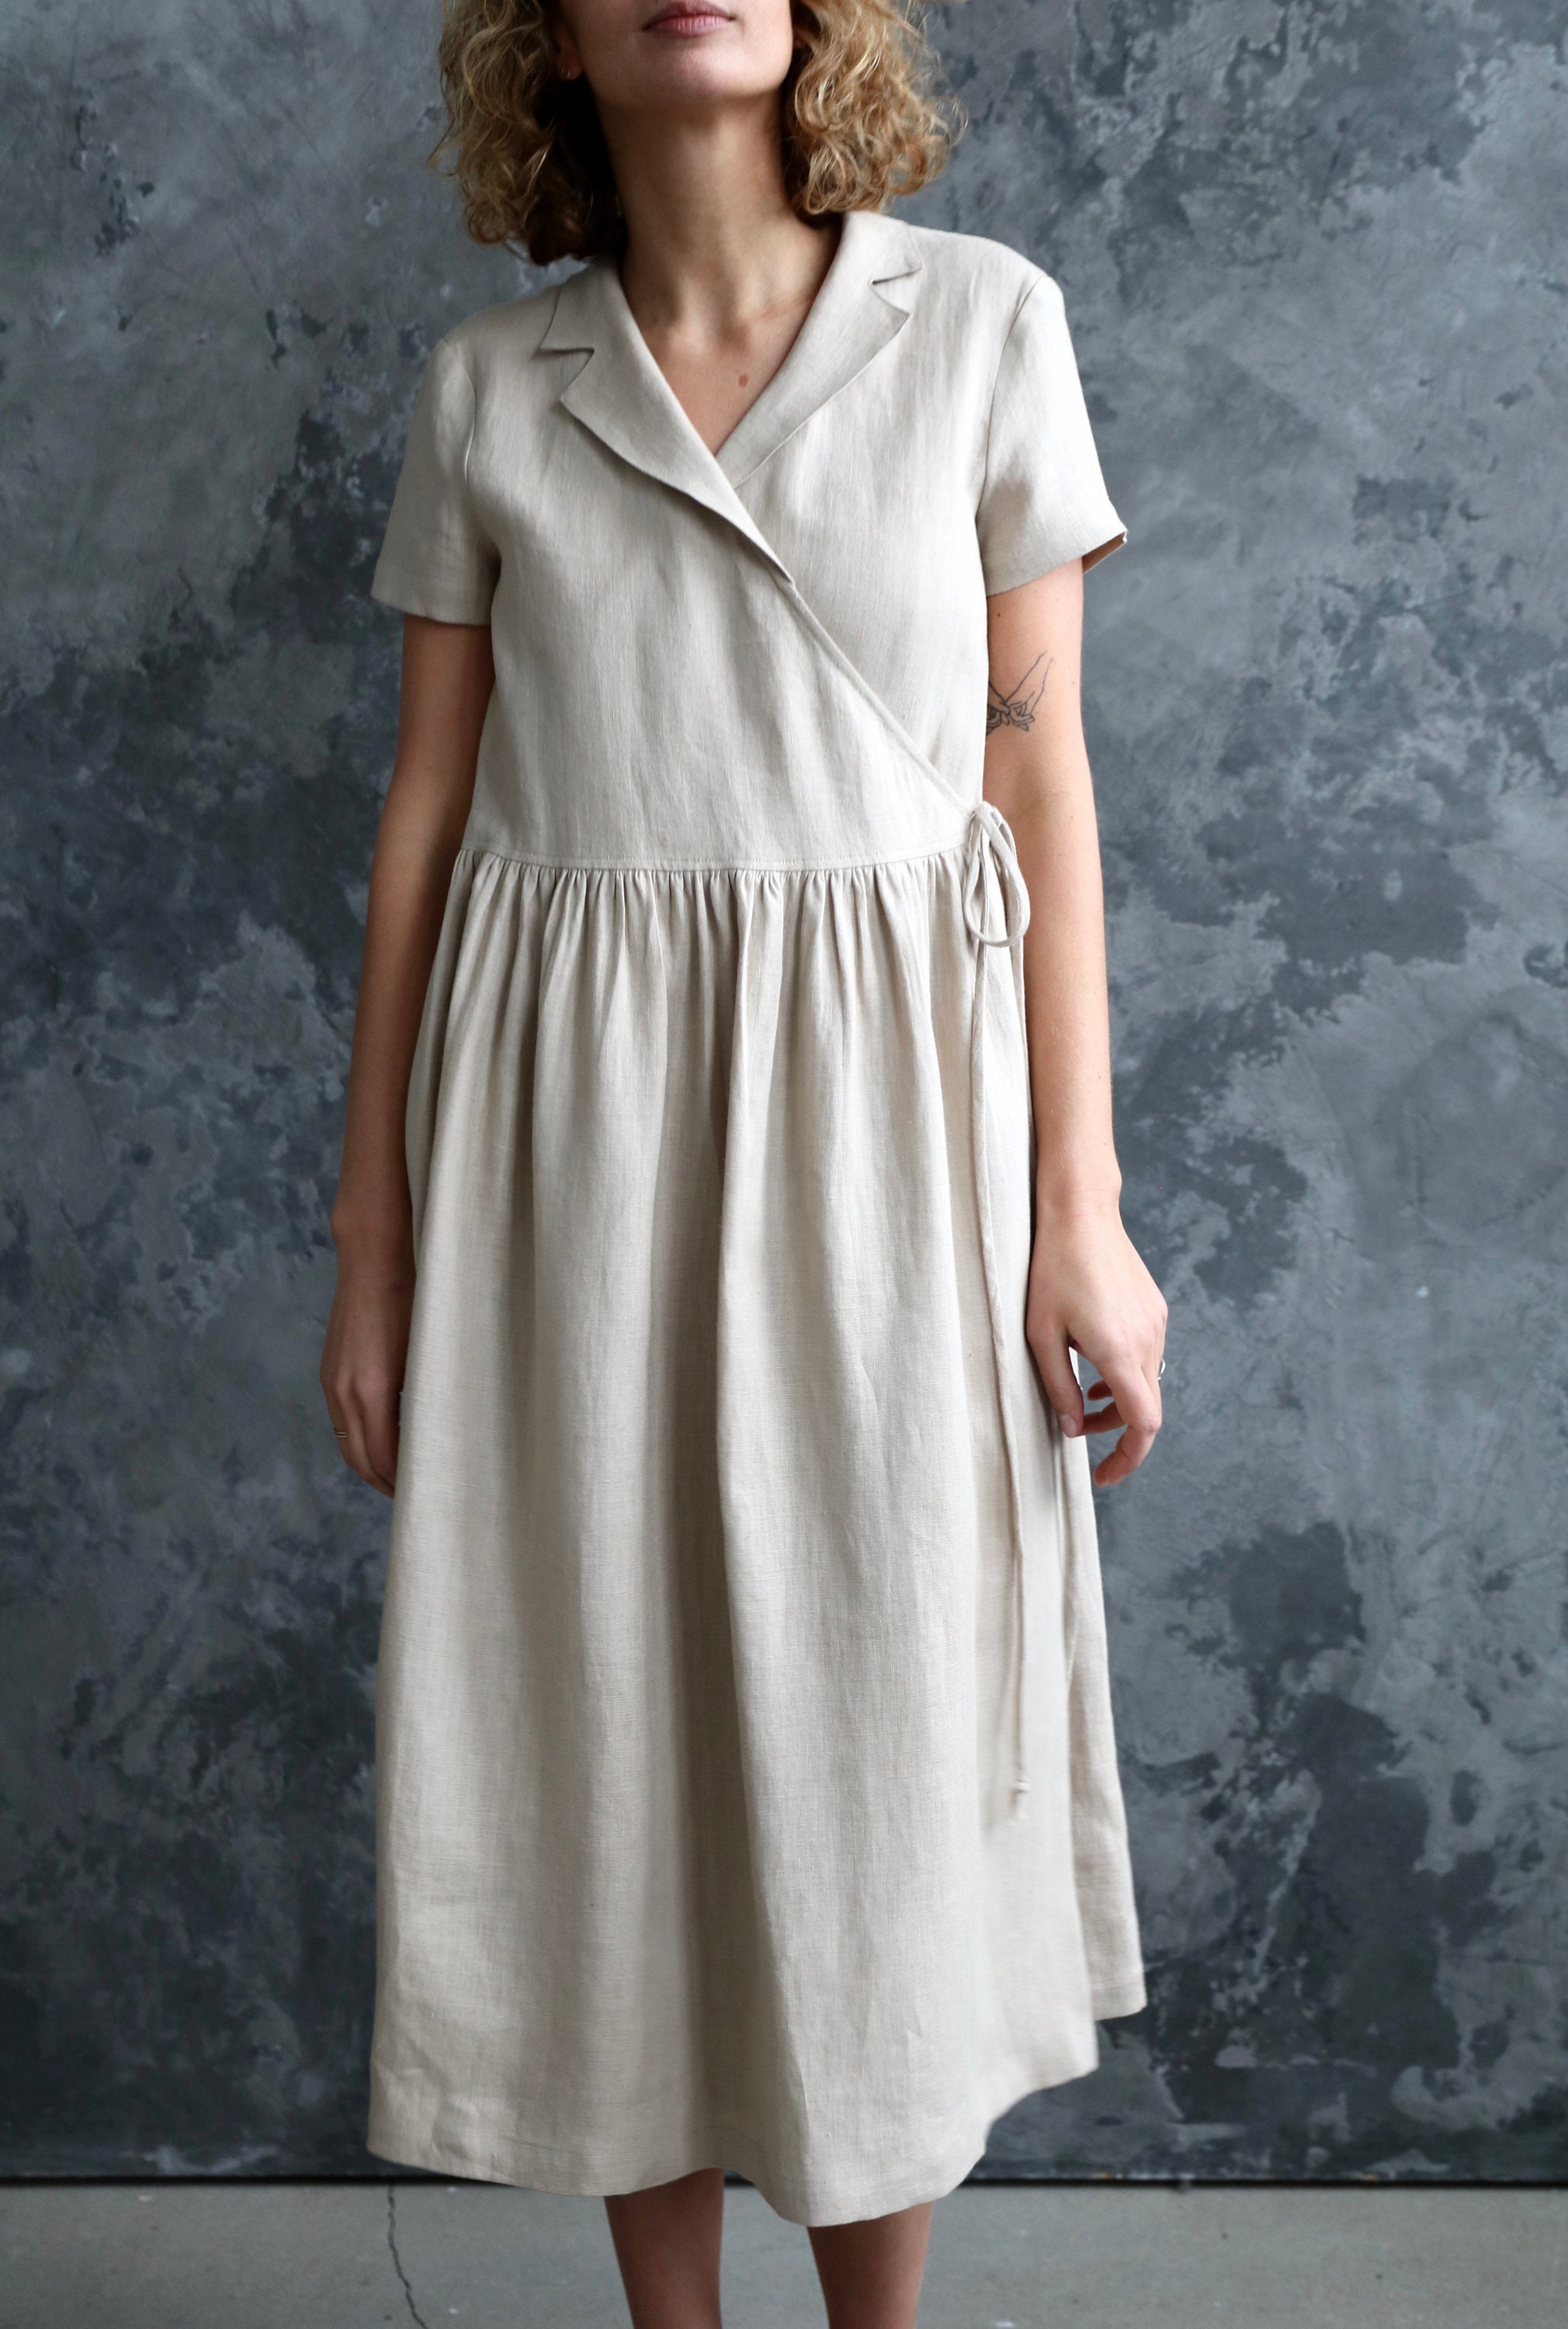 Linen Wrap Dress in Beige/belted Linen Short Sleeve | Etsy UK